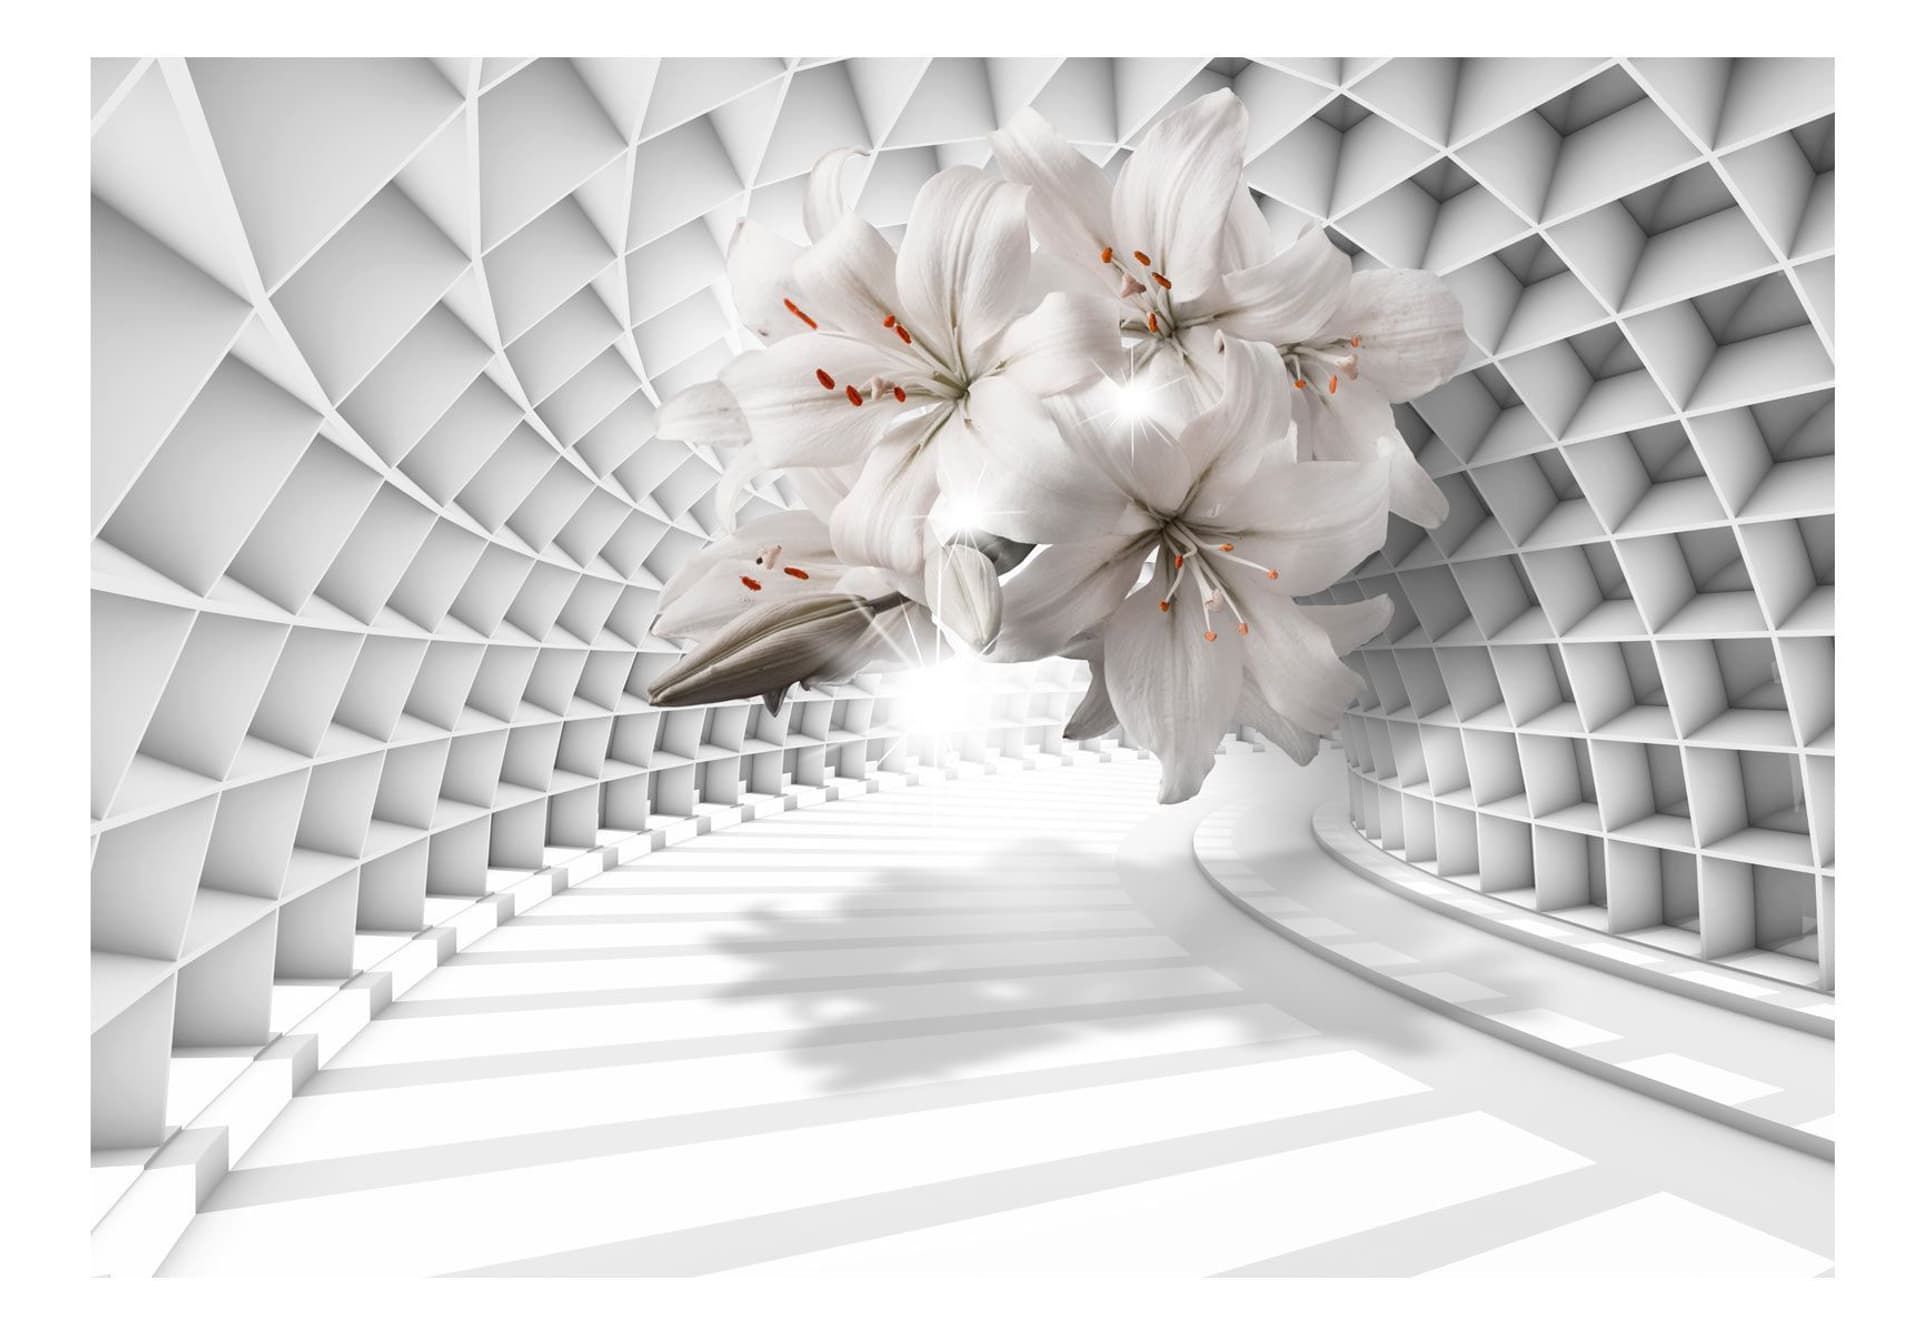 

Fototapeta - Kwiaty w tunelu (rozmiar 400x280)